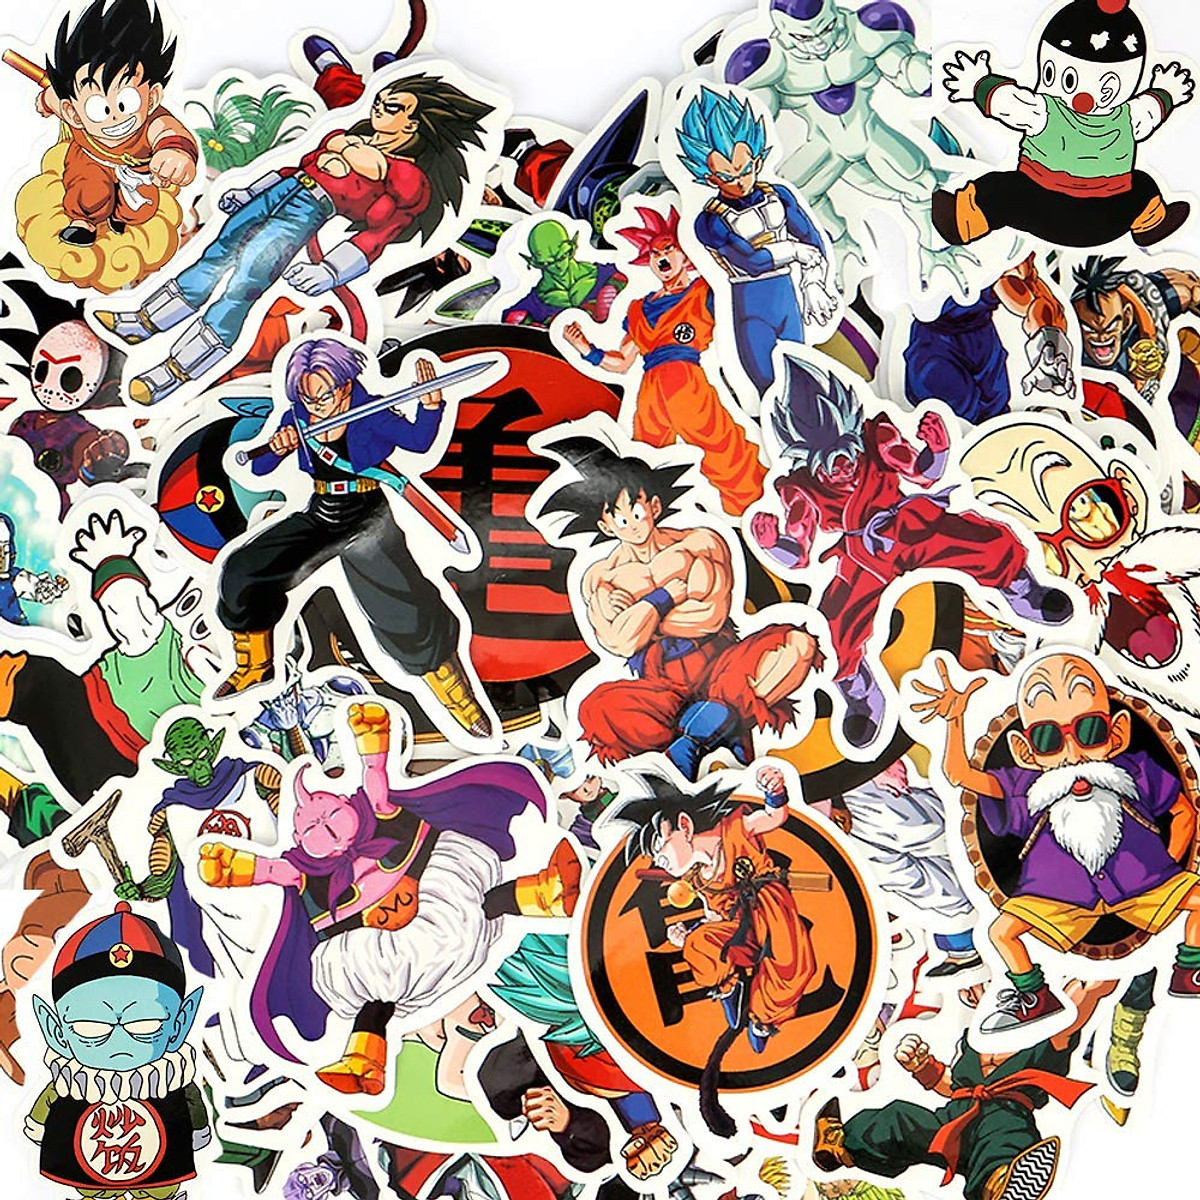 Sticker 7 viên ngọc rồng Dragon Ball  trang trí mũ bảo hiểm, đàn, guitar, ukulele, điện thoại laptop